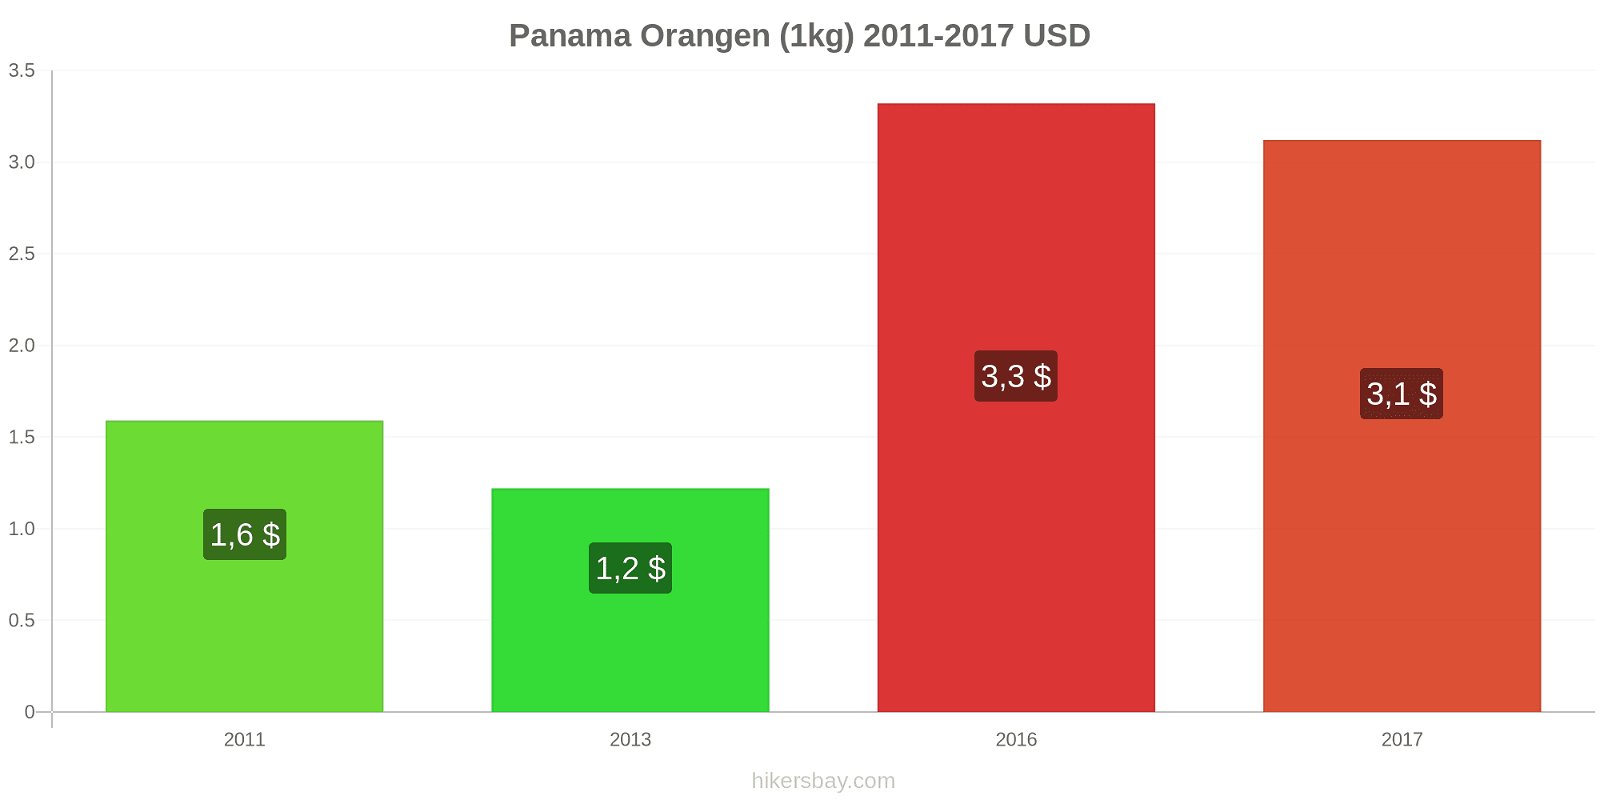 Panama Preisänderungen Orangen (1kg) hikersbay.com